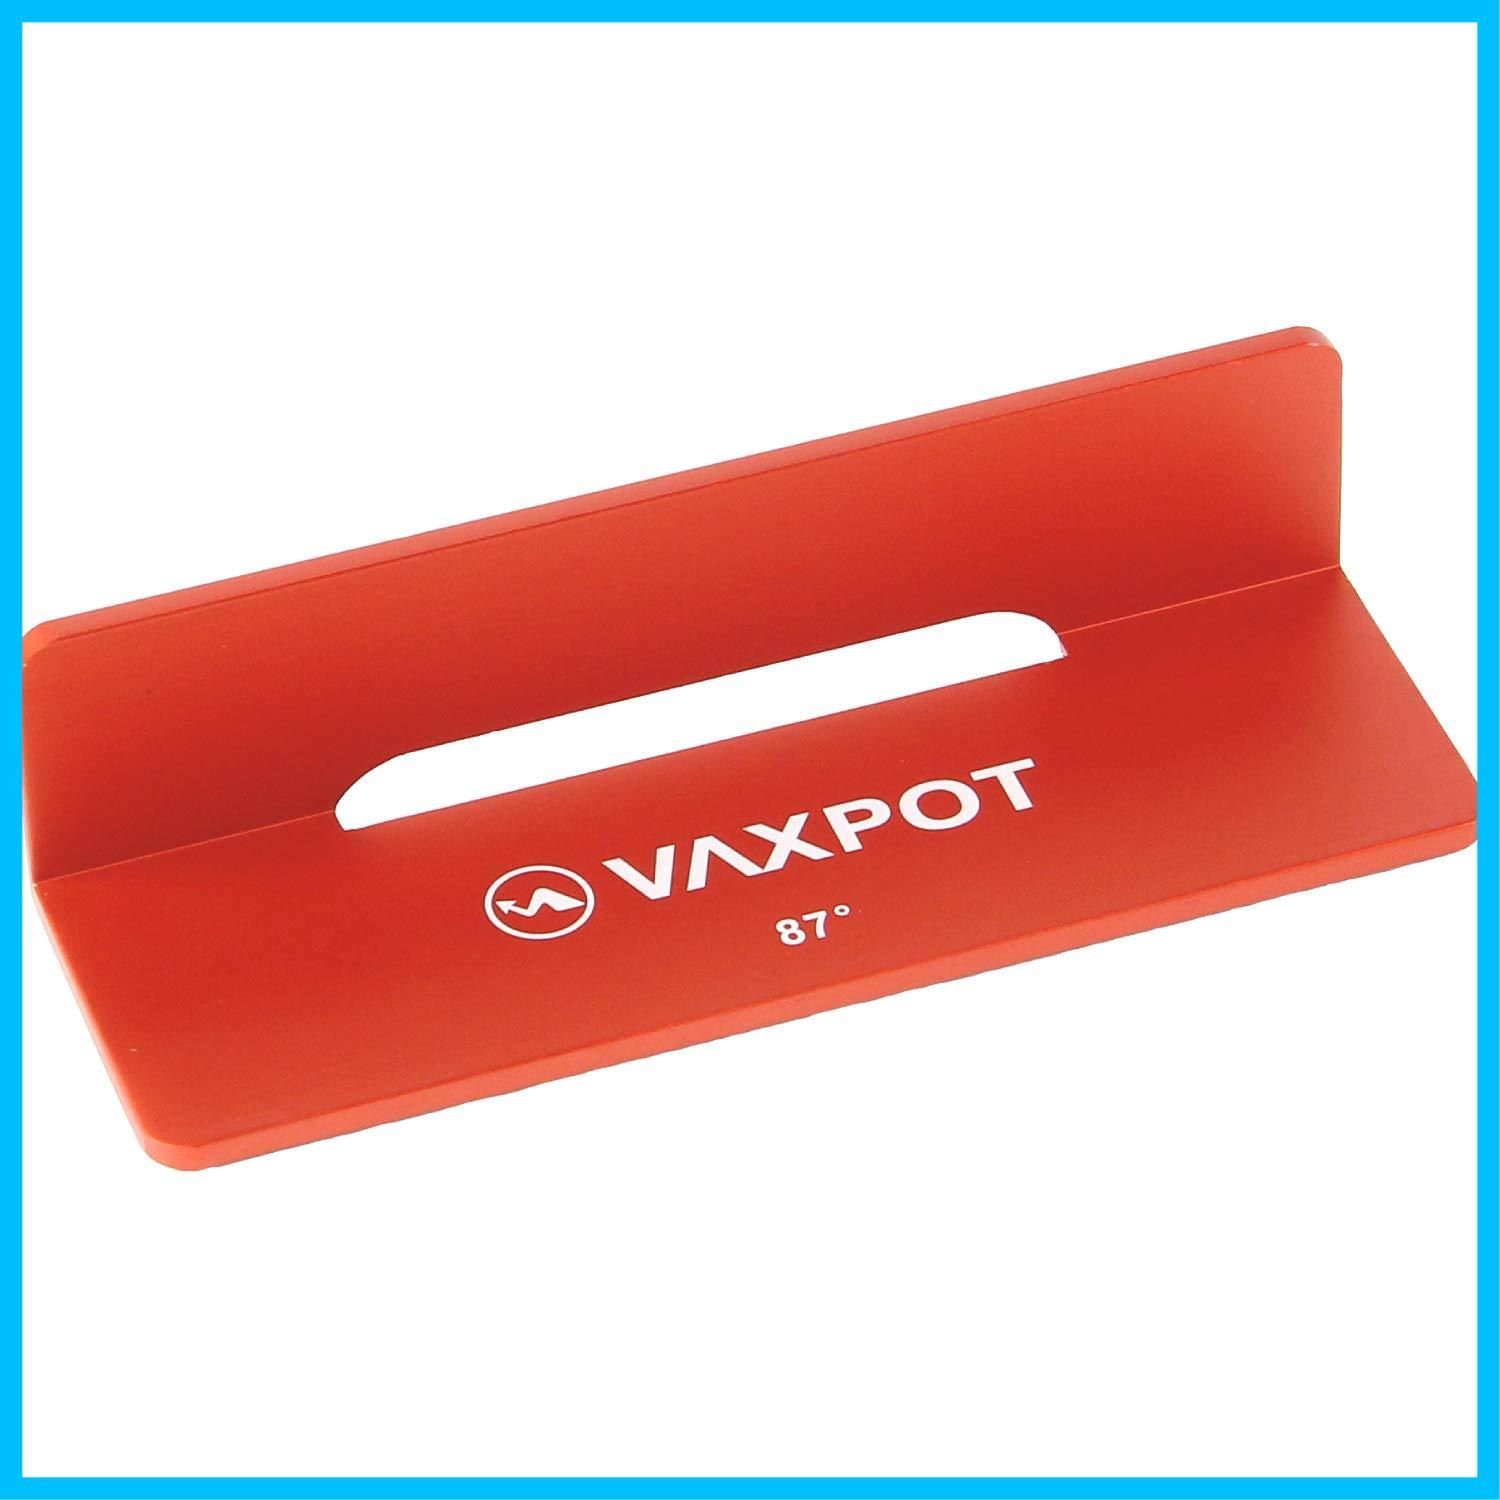 送料無料VAXPOT(バックスポット) ファイルガイド スノーボード スキー 